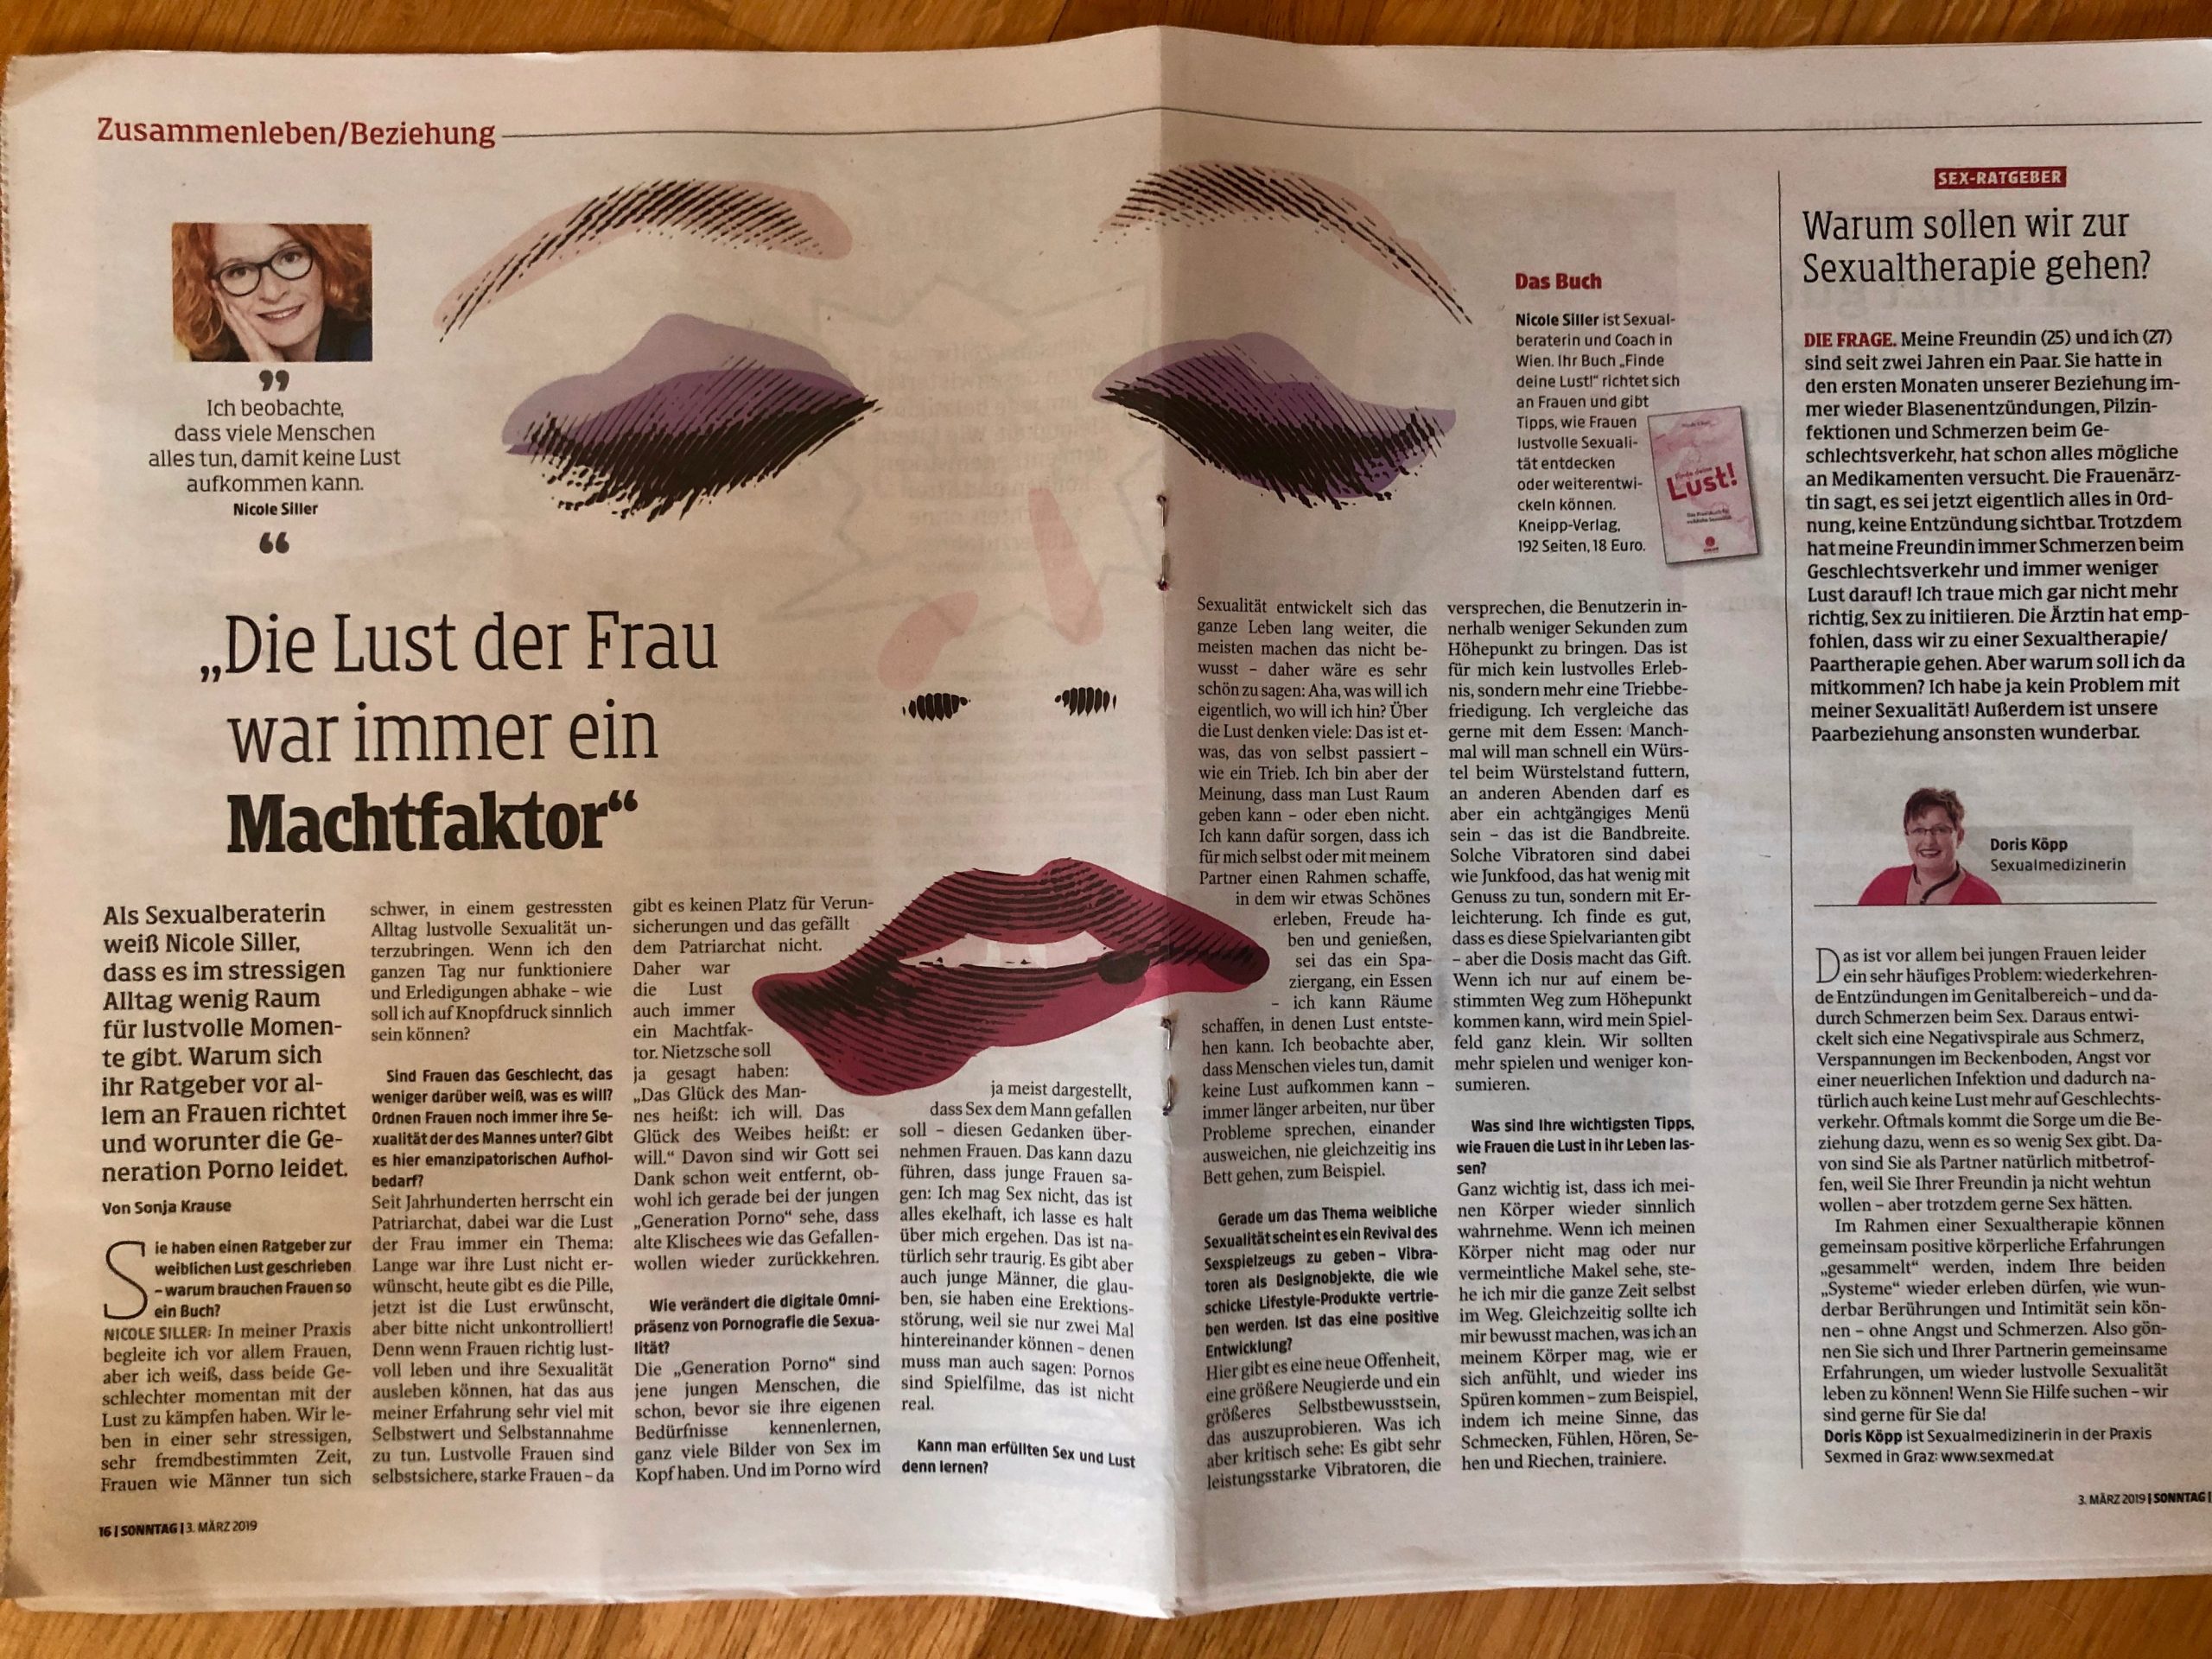 Nicole Siller lebendich. "Die Lust der Frau war immer ein Machtfaktor" Kleine Zeitung, 03.03.2019